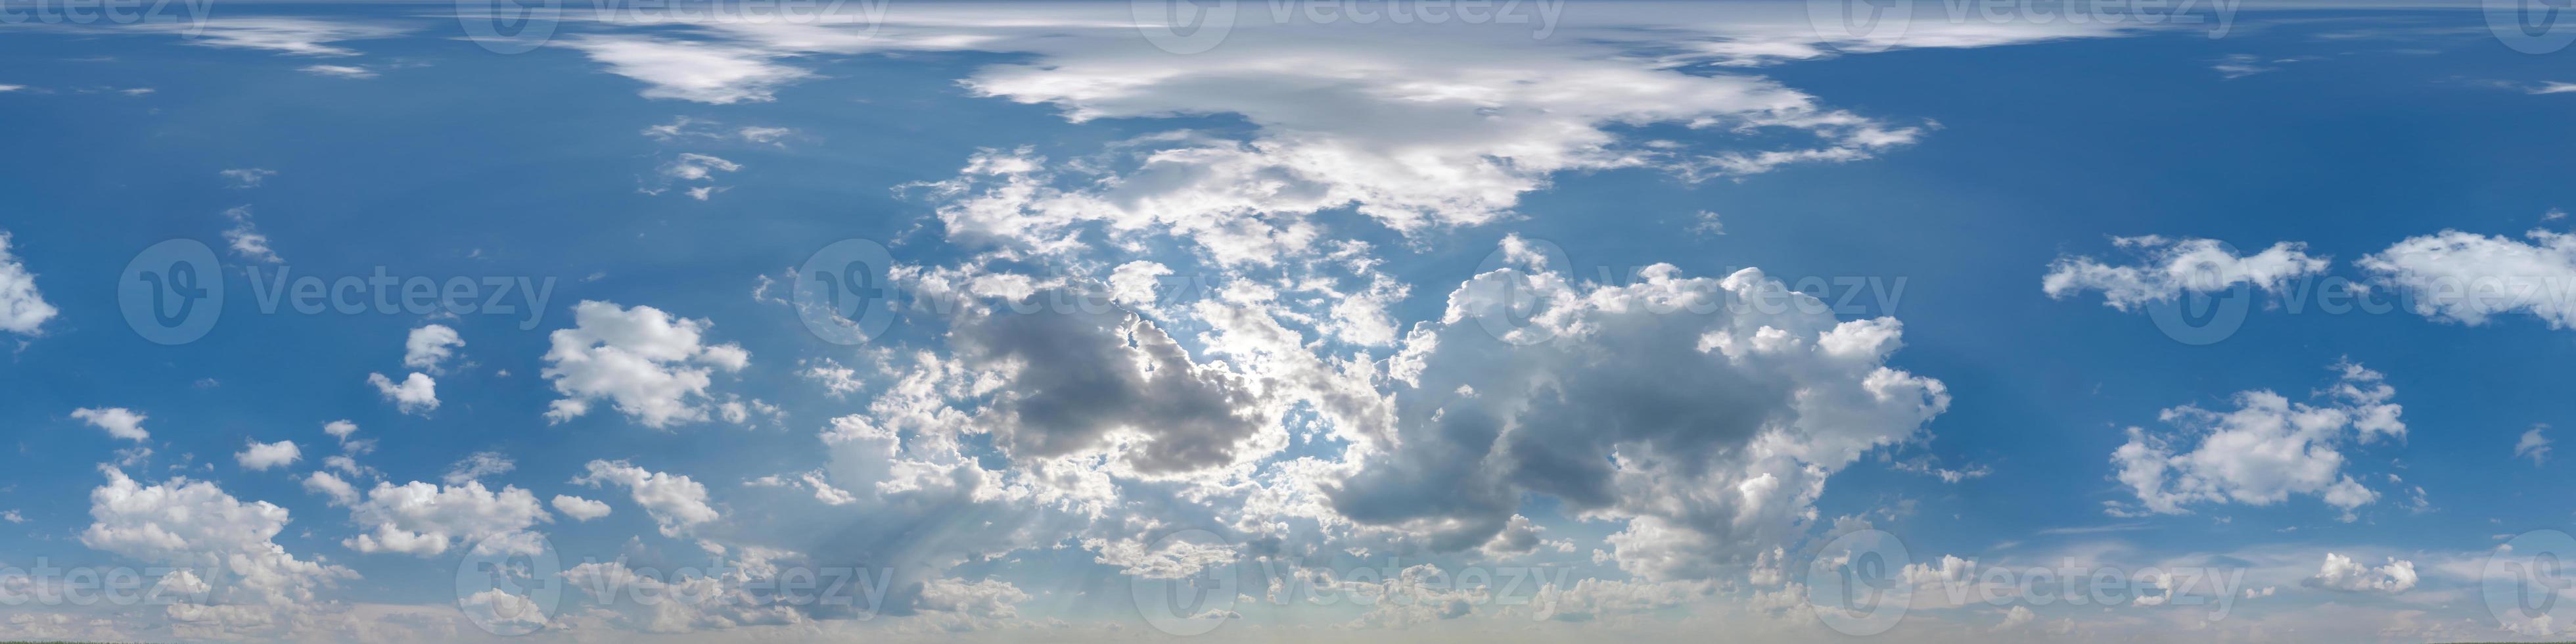 blu cielo con bellissimo nuvole come senza soluzione di continuità hdri 360 panorama Visualizza con zenit per uso nel 3d grafica o gioco sviluppo come cielo cupola o modificare fuco tiro foto